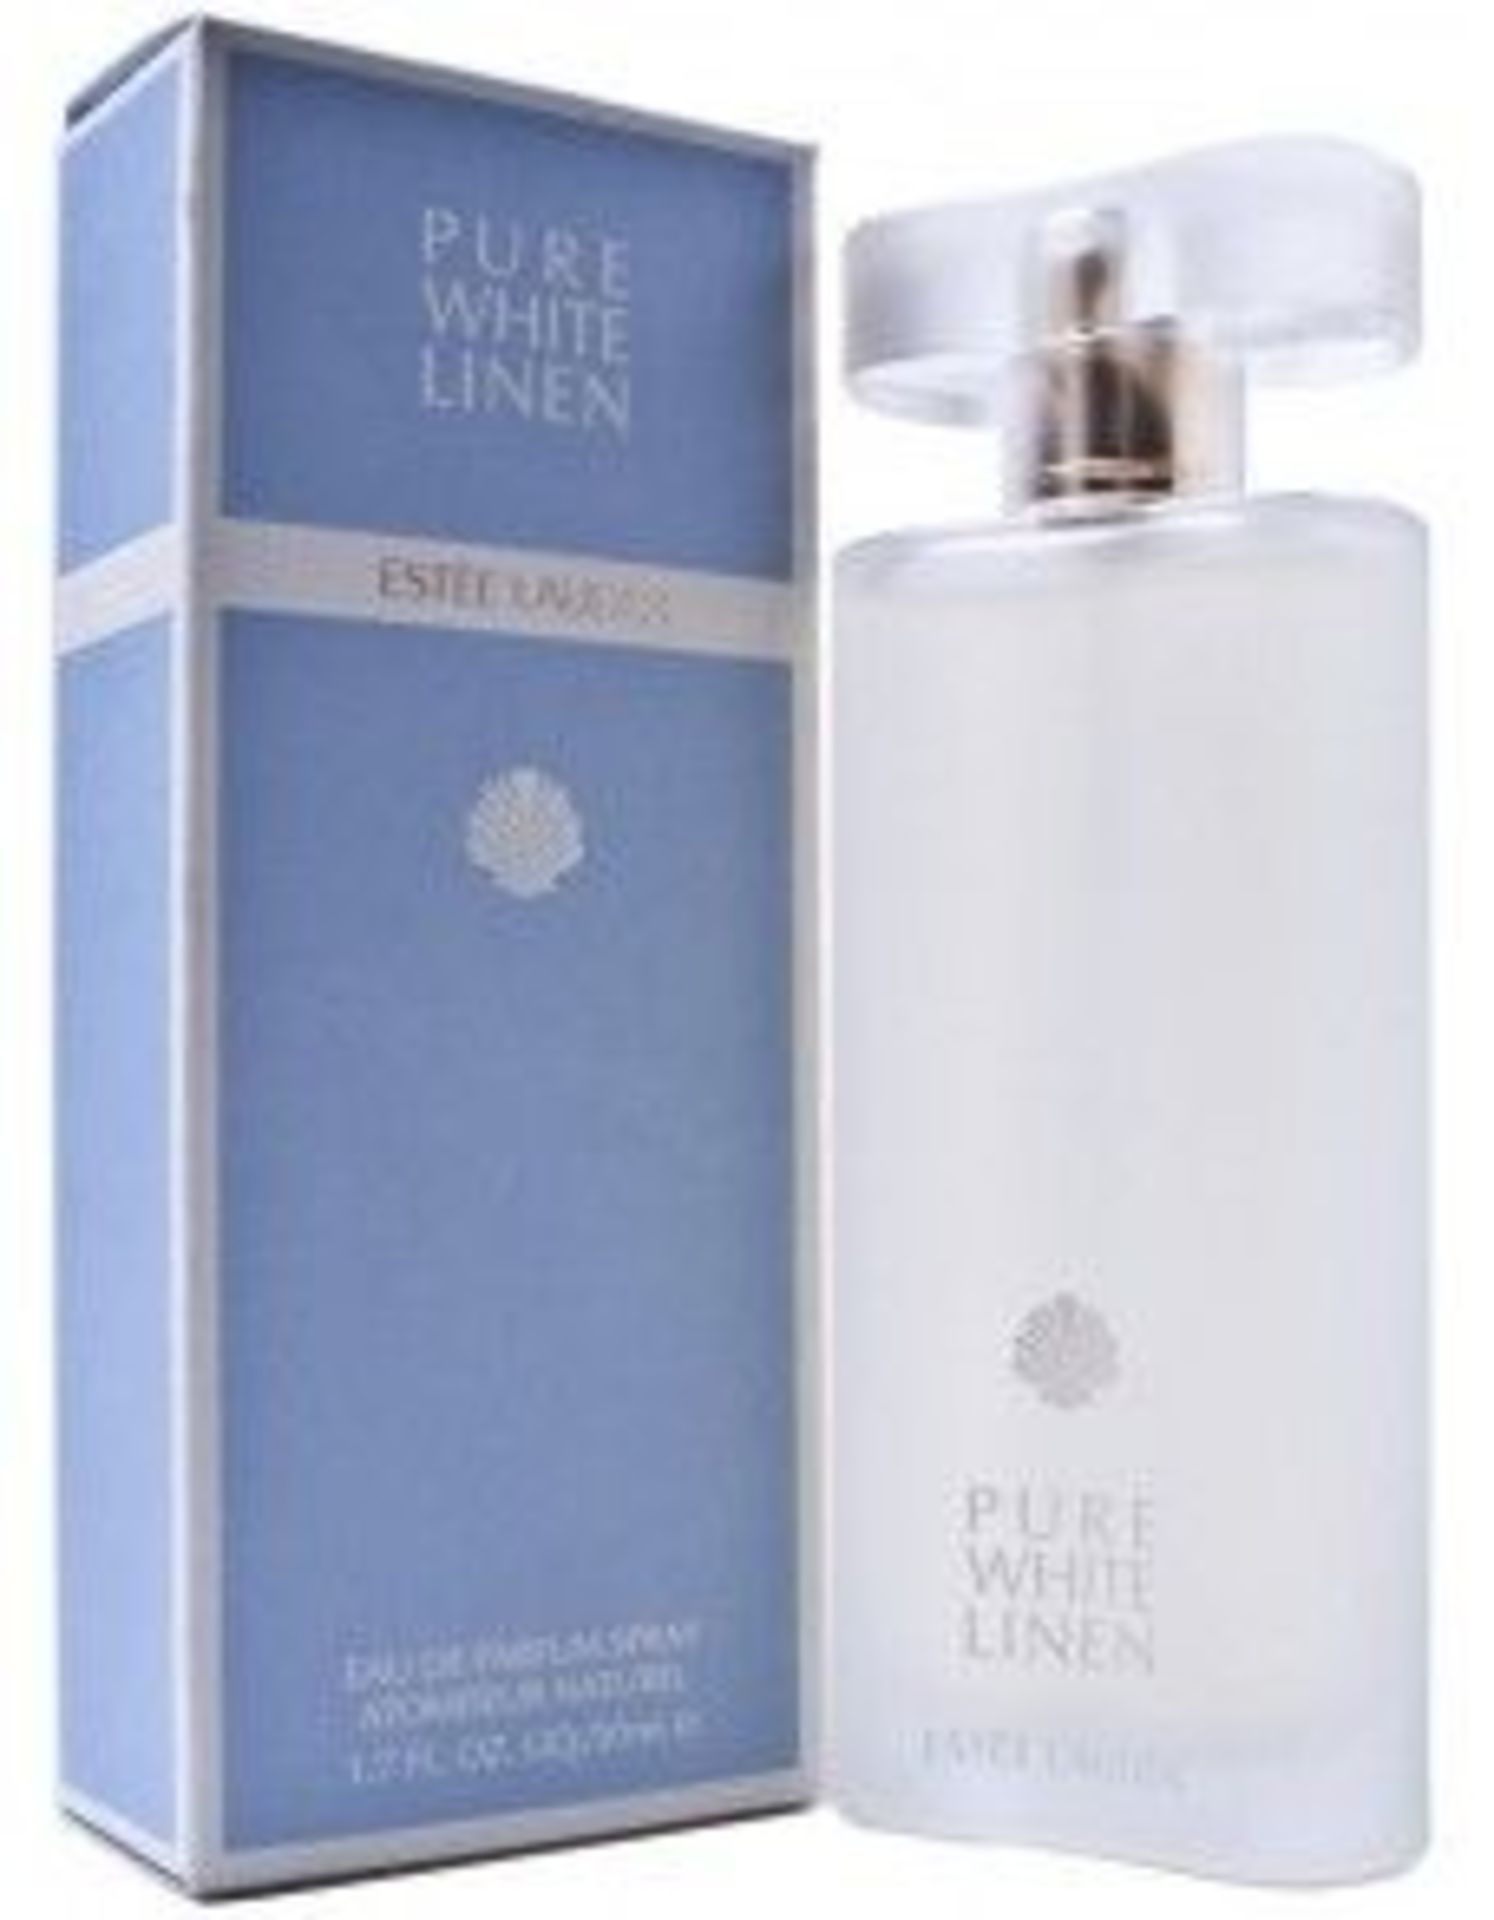 V Brand New Estee Lauder Pure White Linen 50ml EDP Spray